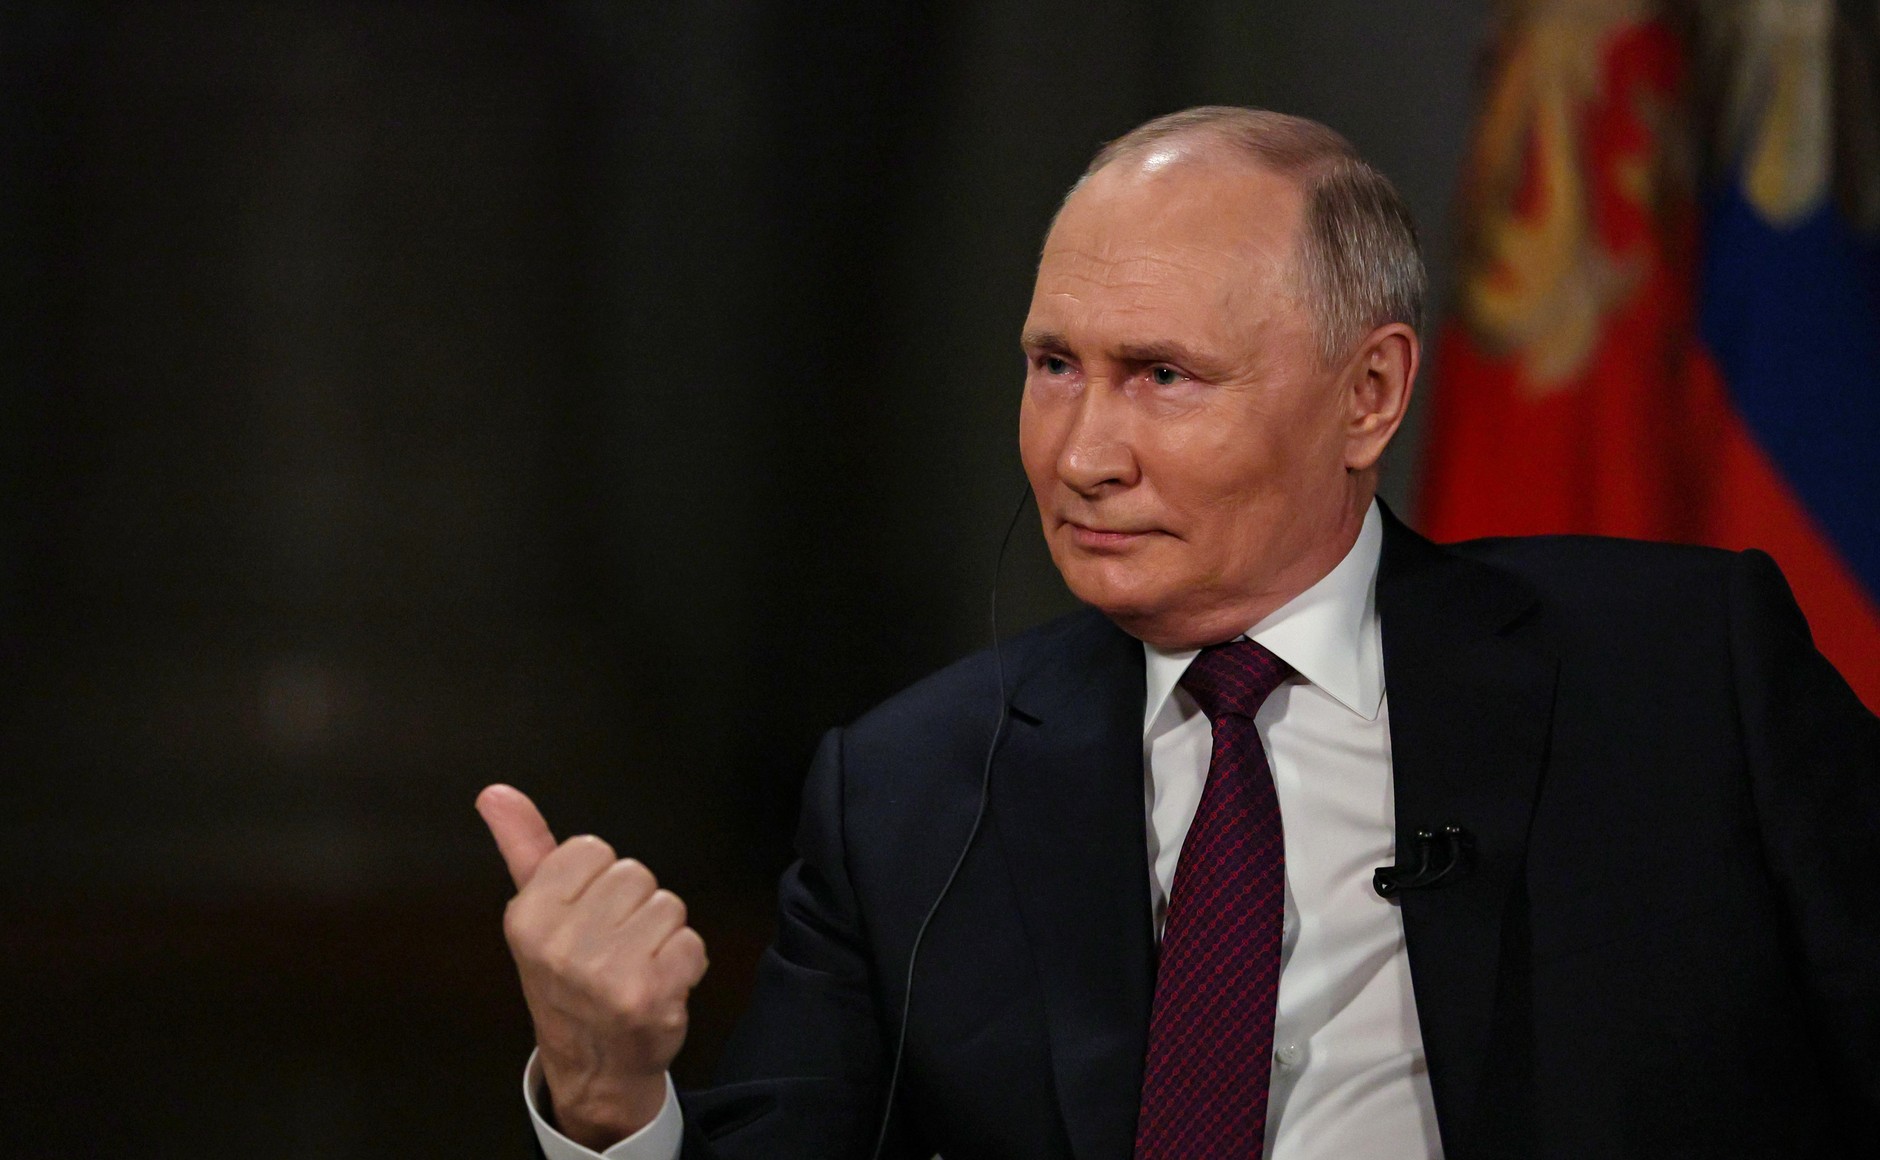 "Империя США в руинах": Интервью Путина подорвало веру американцев в демократию